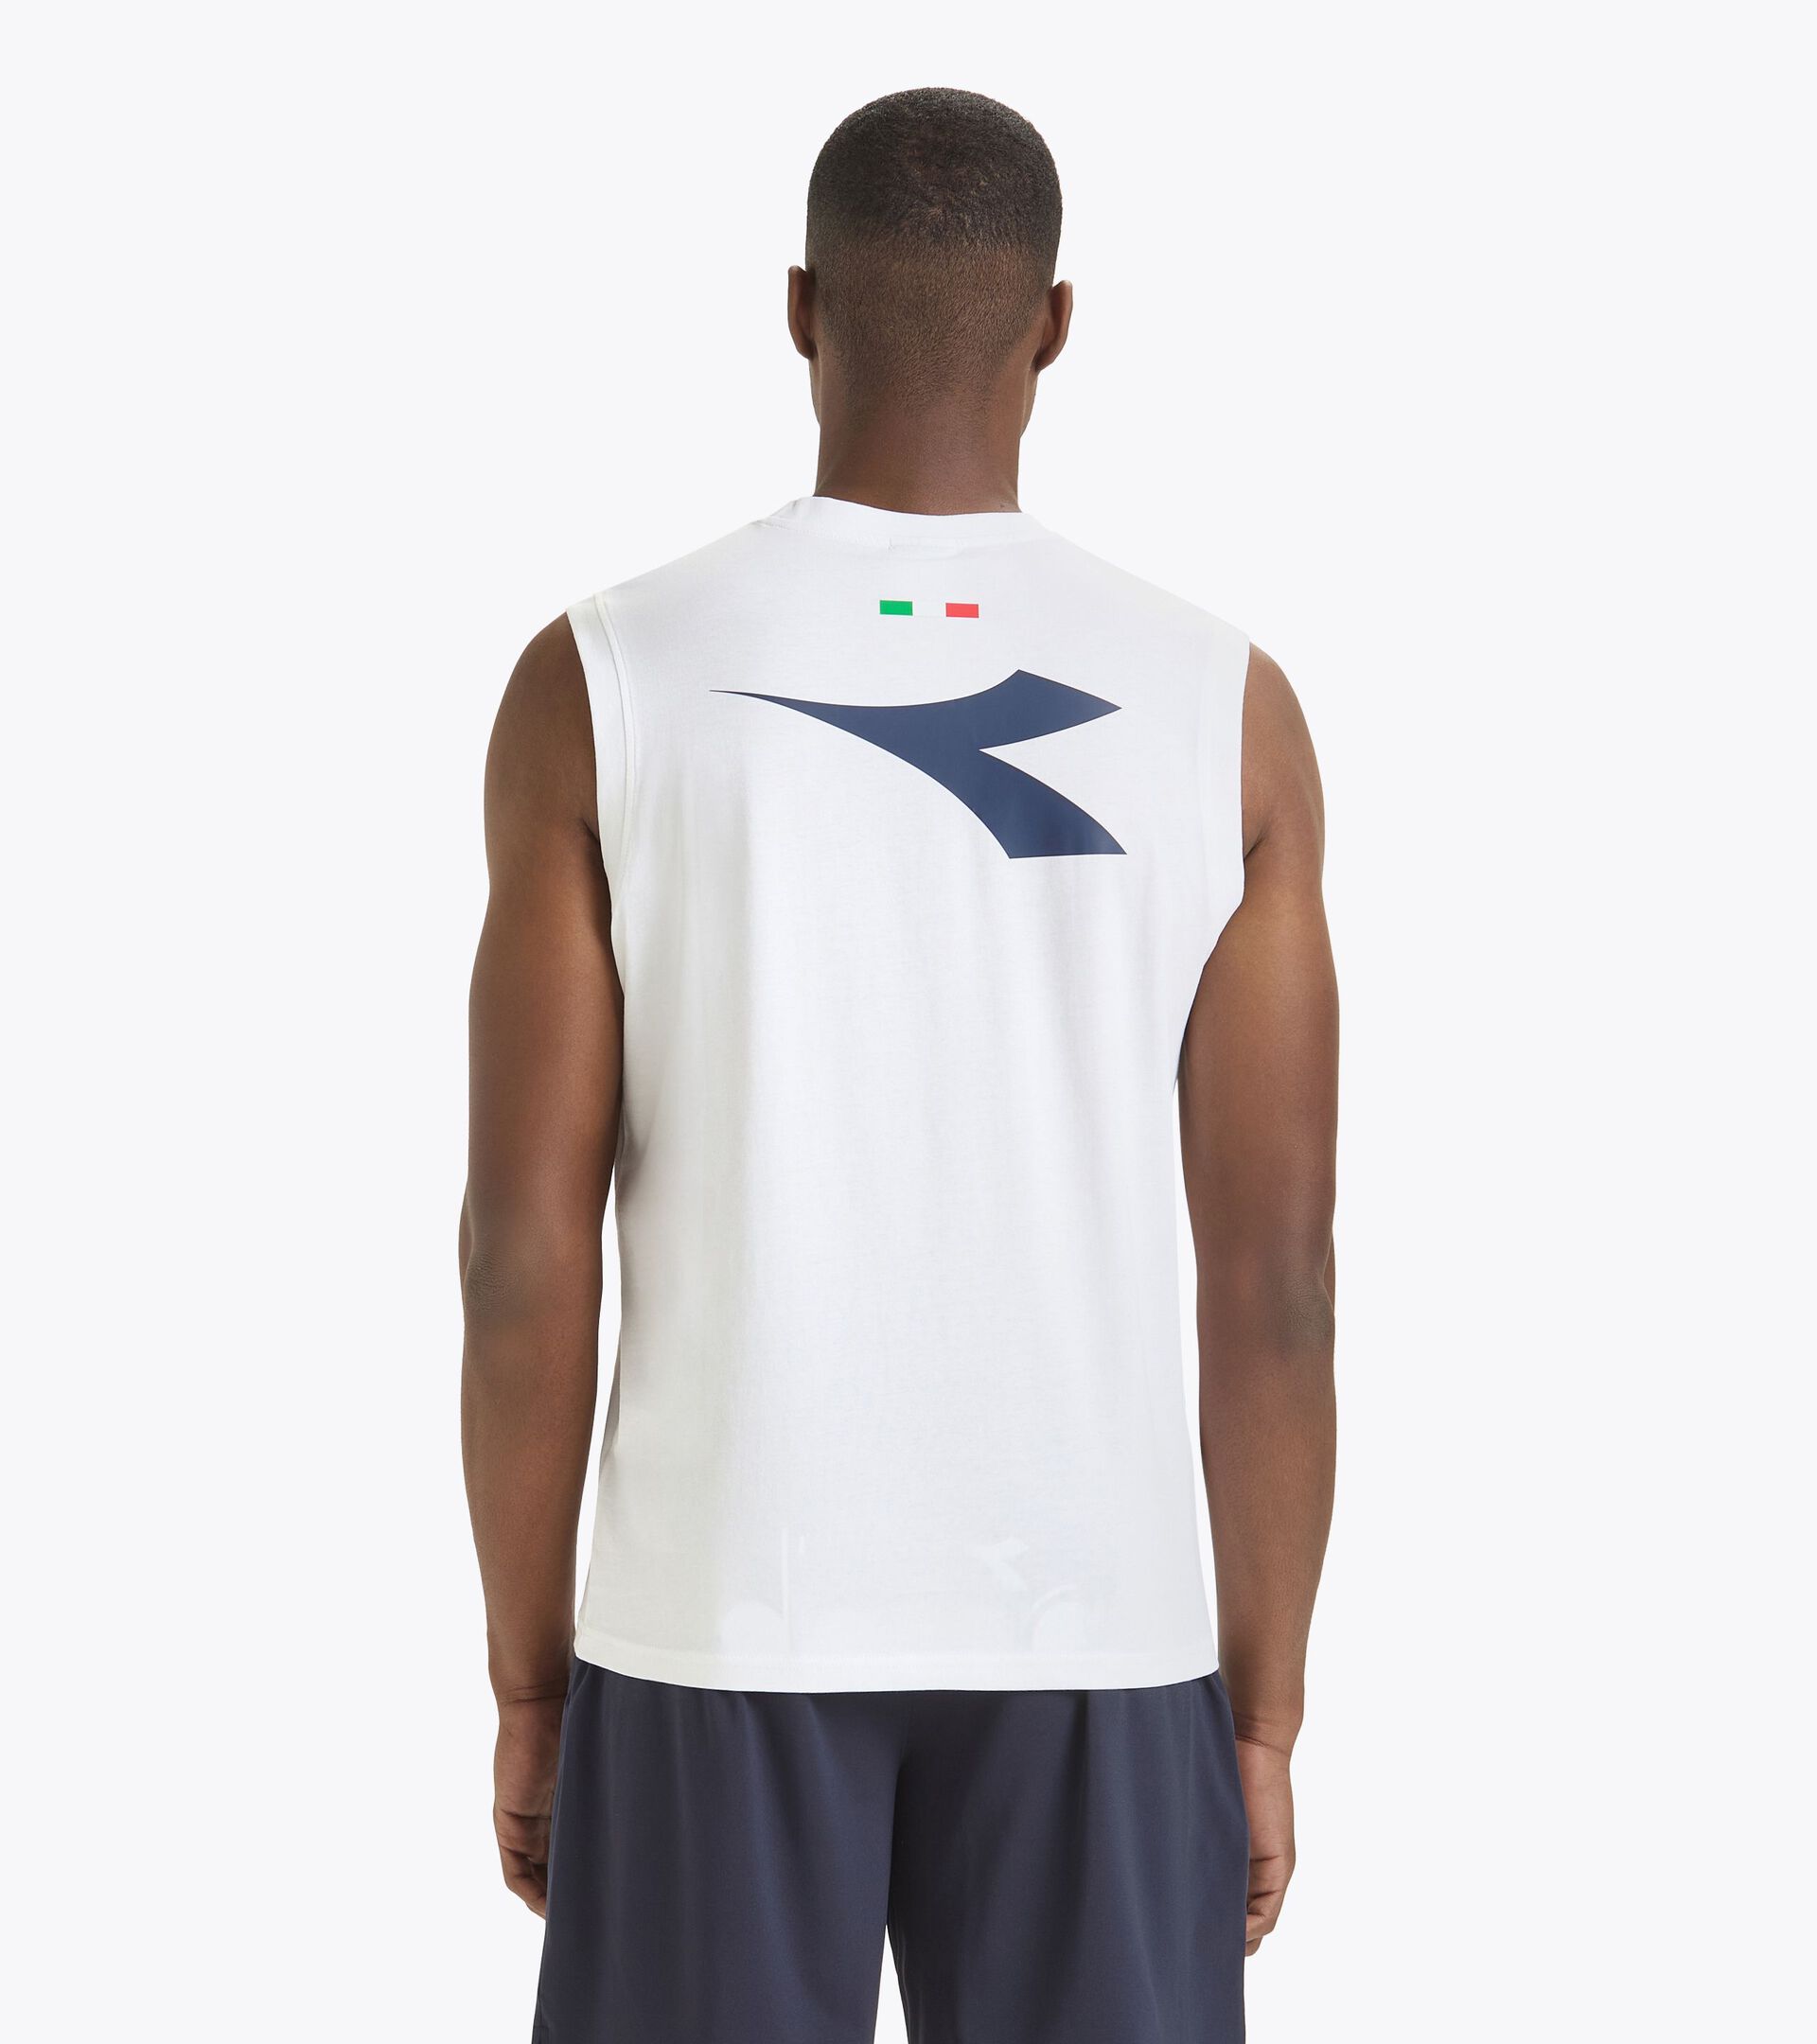 Camiseta sin mangas para hombre - Selección Italiana de Vóley Playa SLEEVELESS ALLENAMENTO UOMO BV24 ITALIA BLANCO VIVO - Diadora